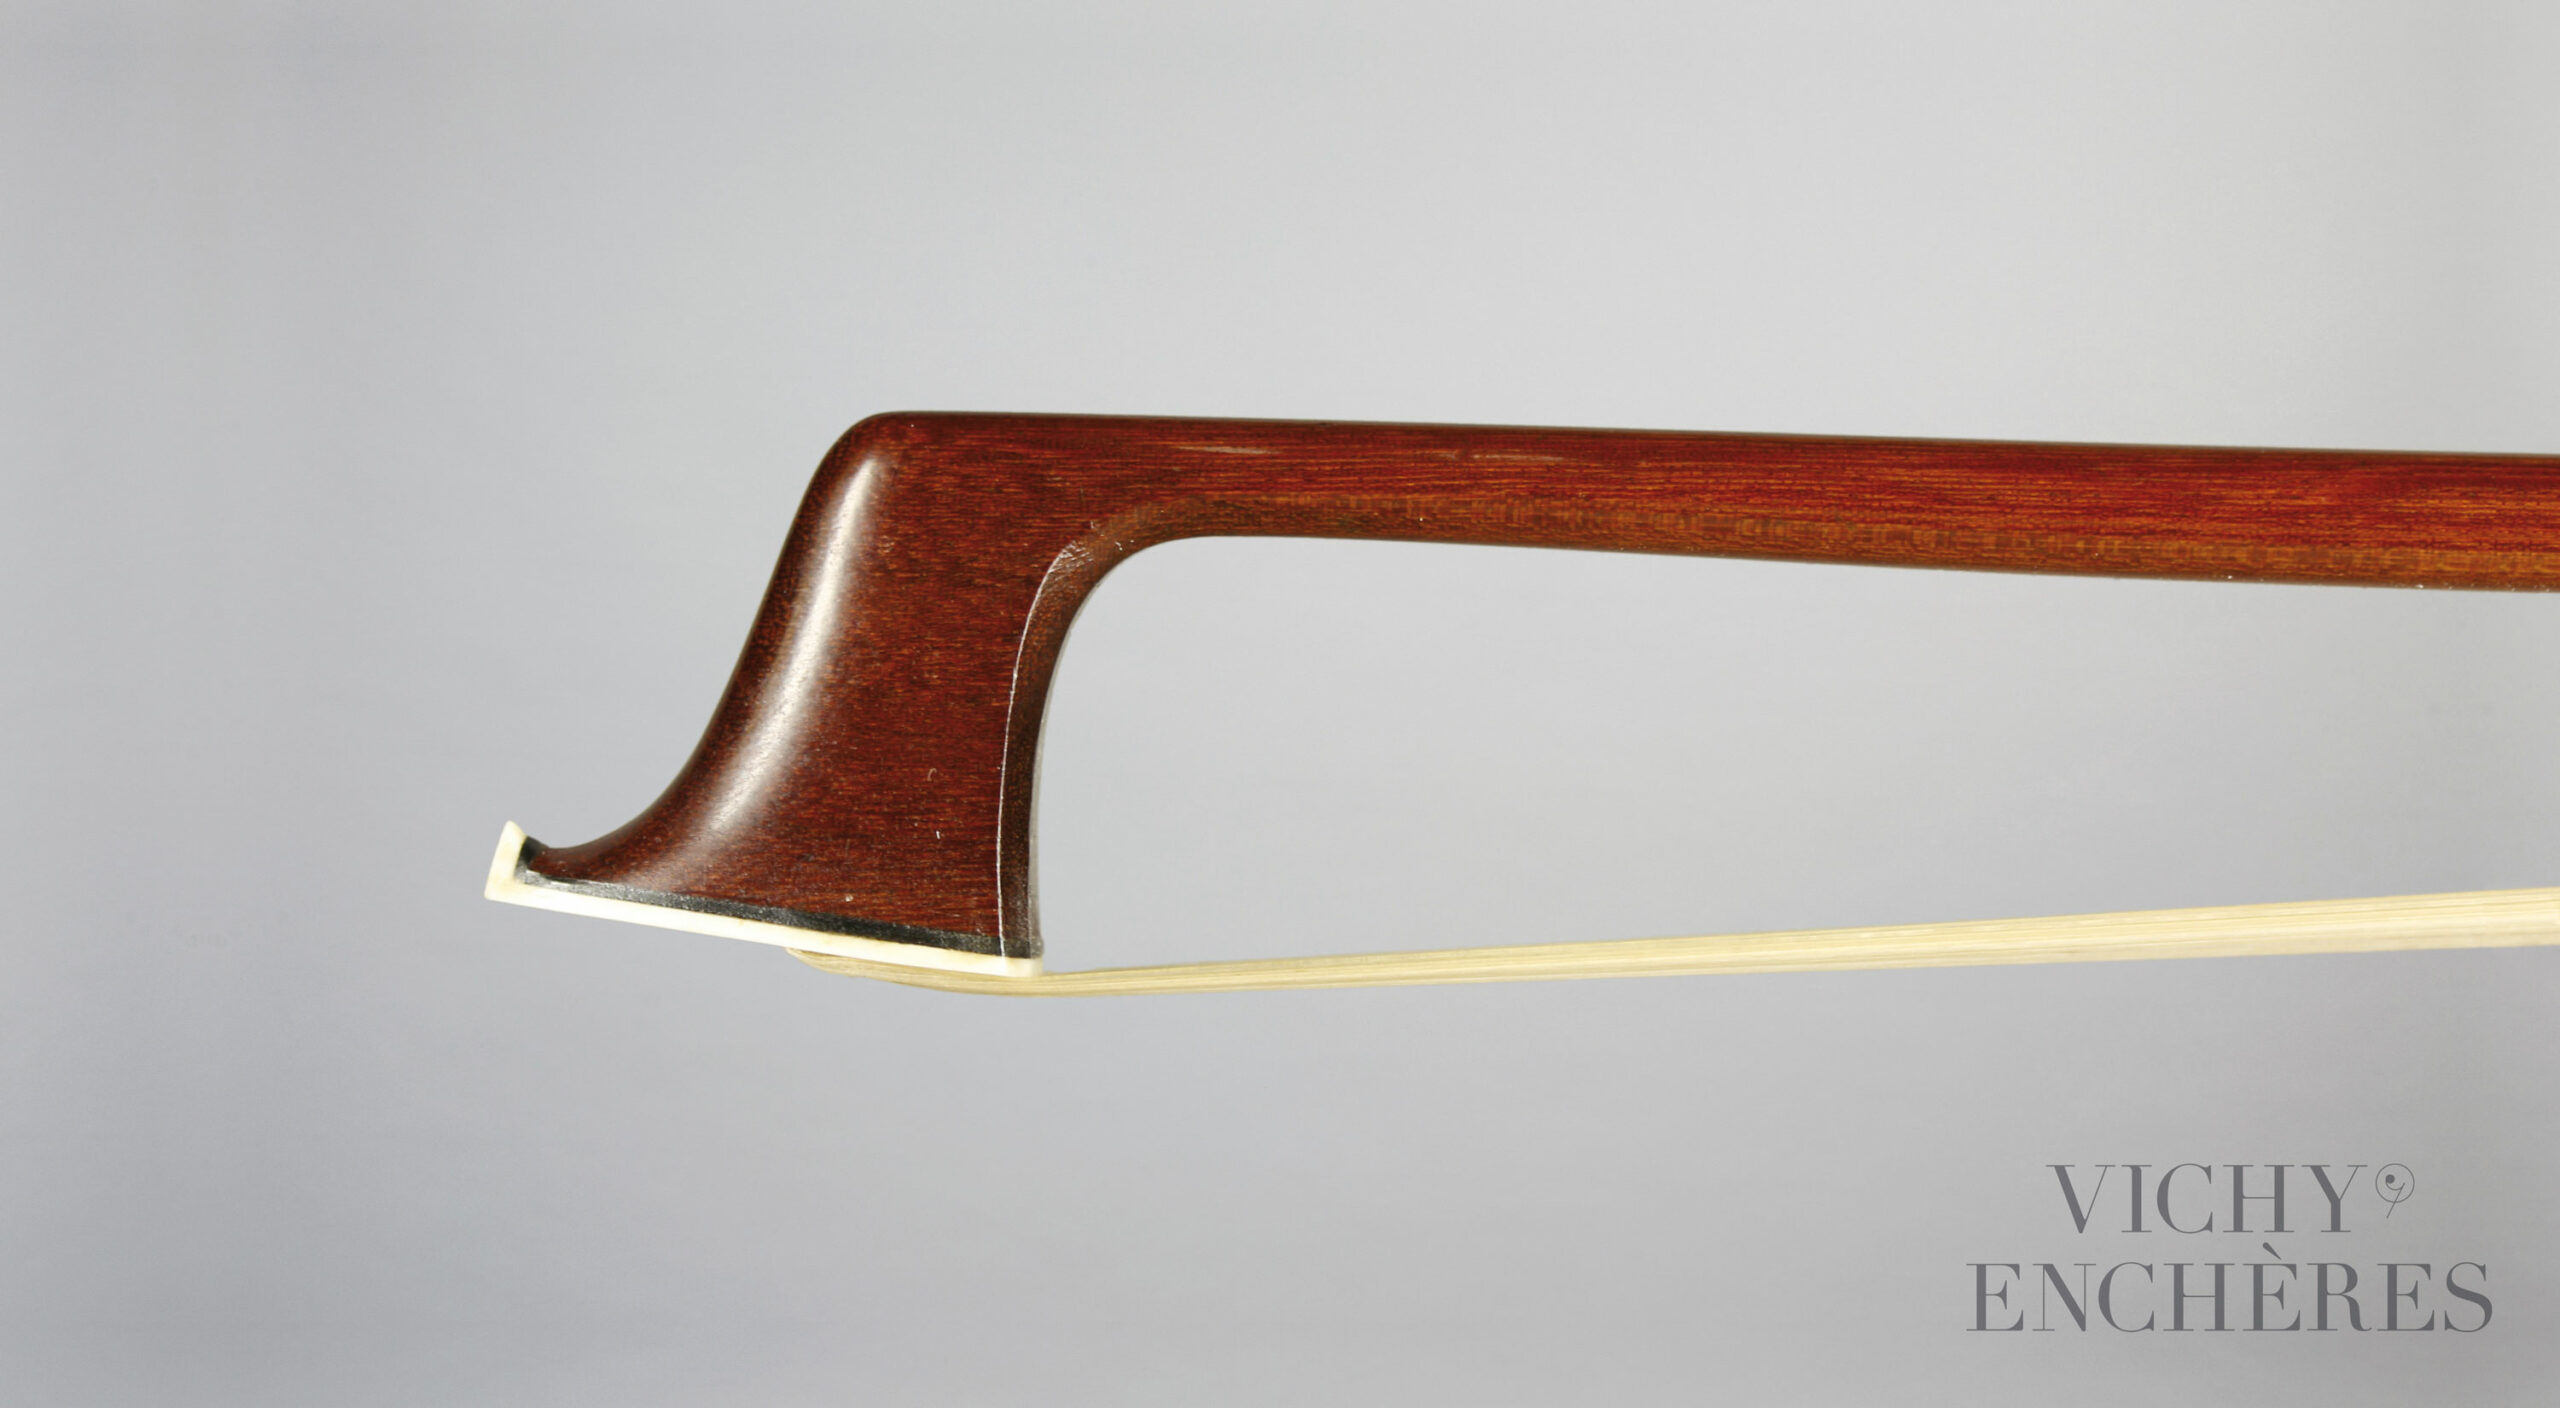 Archet de violon d’Etienne PAJEOT Instrument mis en vente par Vichy Enchères le 1er décembre 2022 © Christophe Darbelet